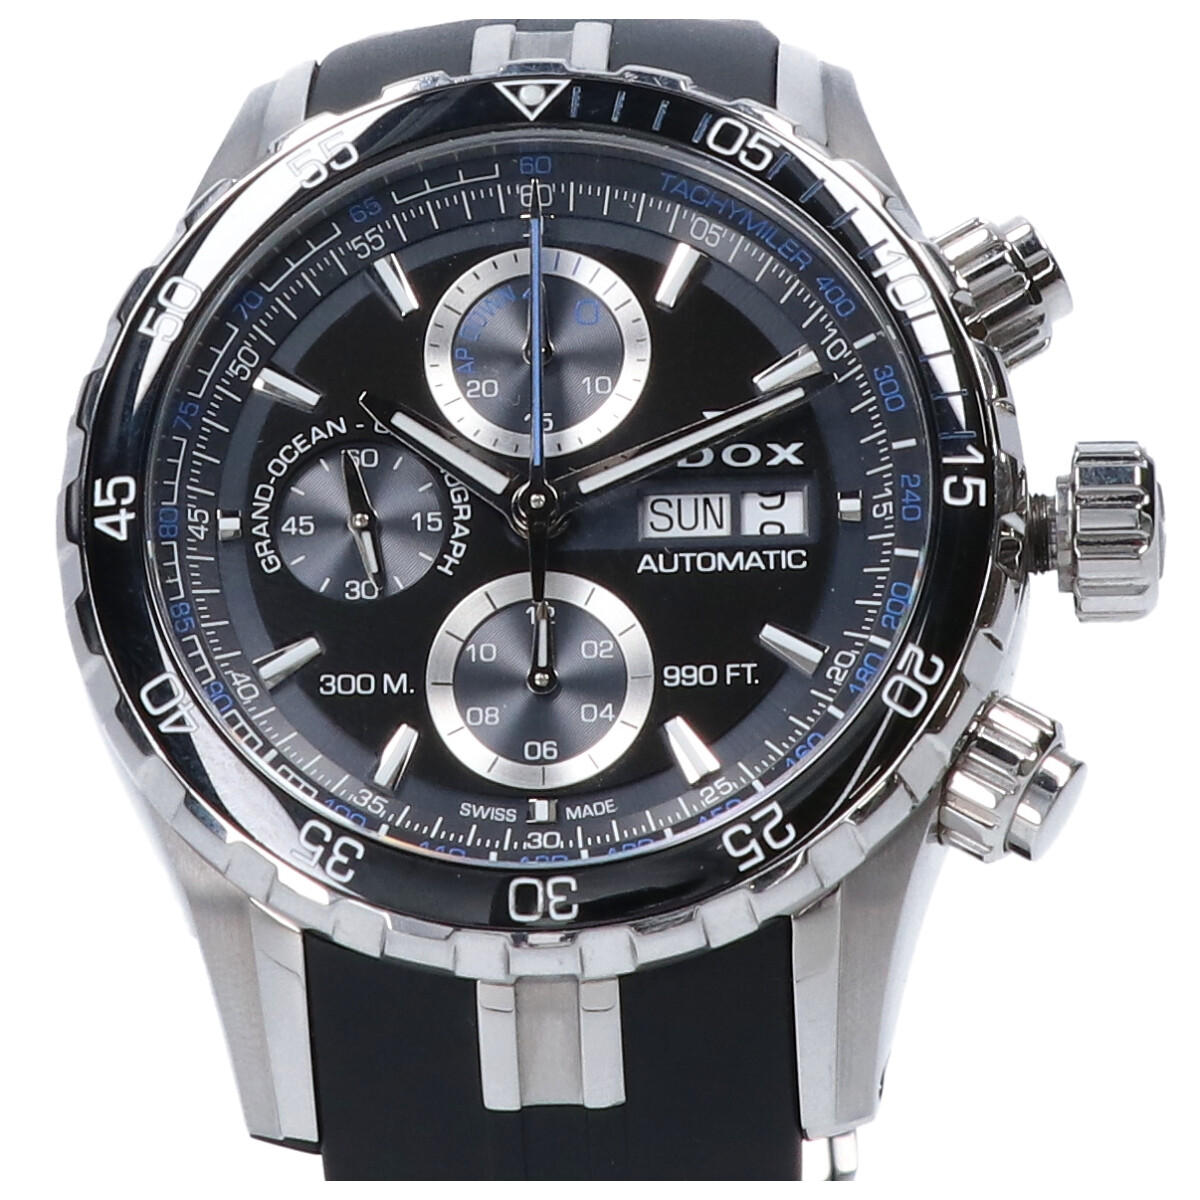 エドックスの01123 グランドオーシャン クロノグラフ 自動巻き 腕時計の買取実績です。